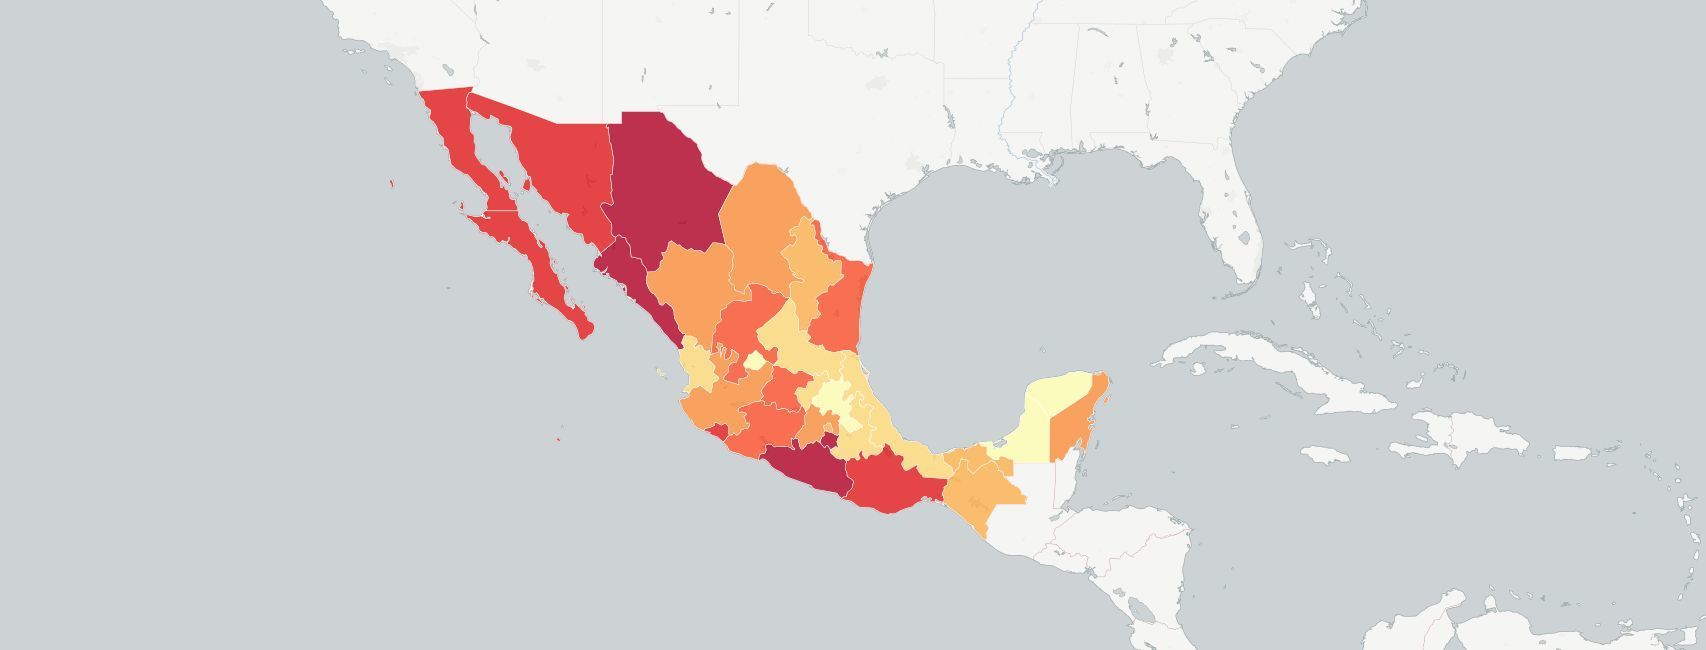 Tasas de homicidio doloso en México por estados.